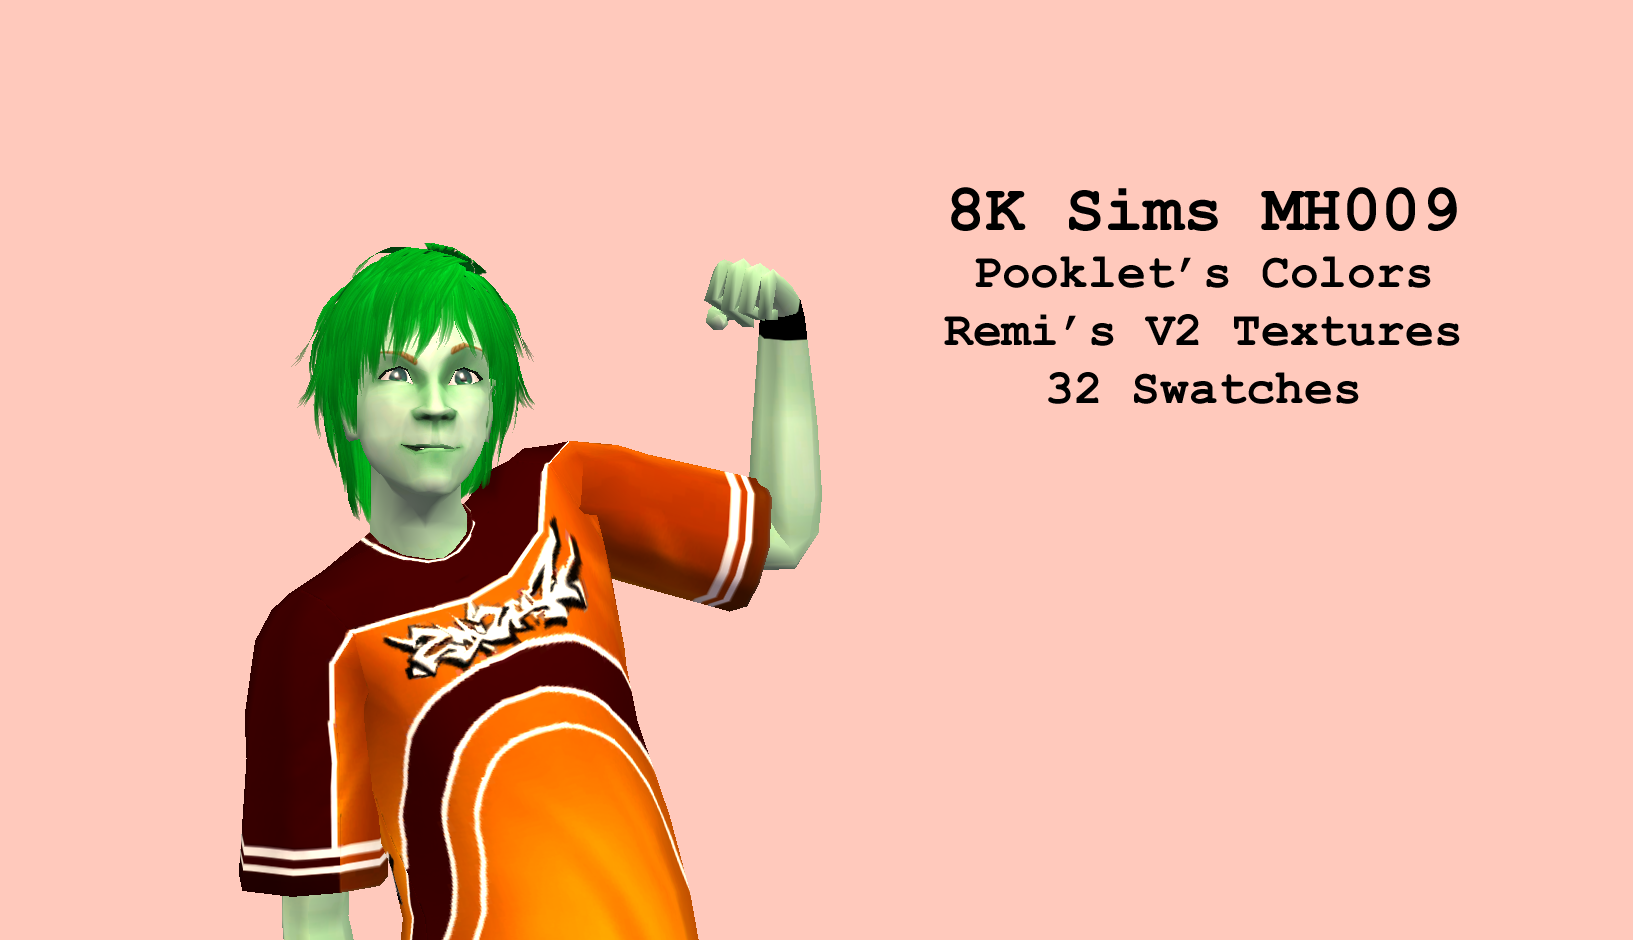 8K Sims MH009